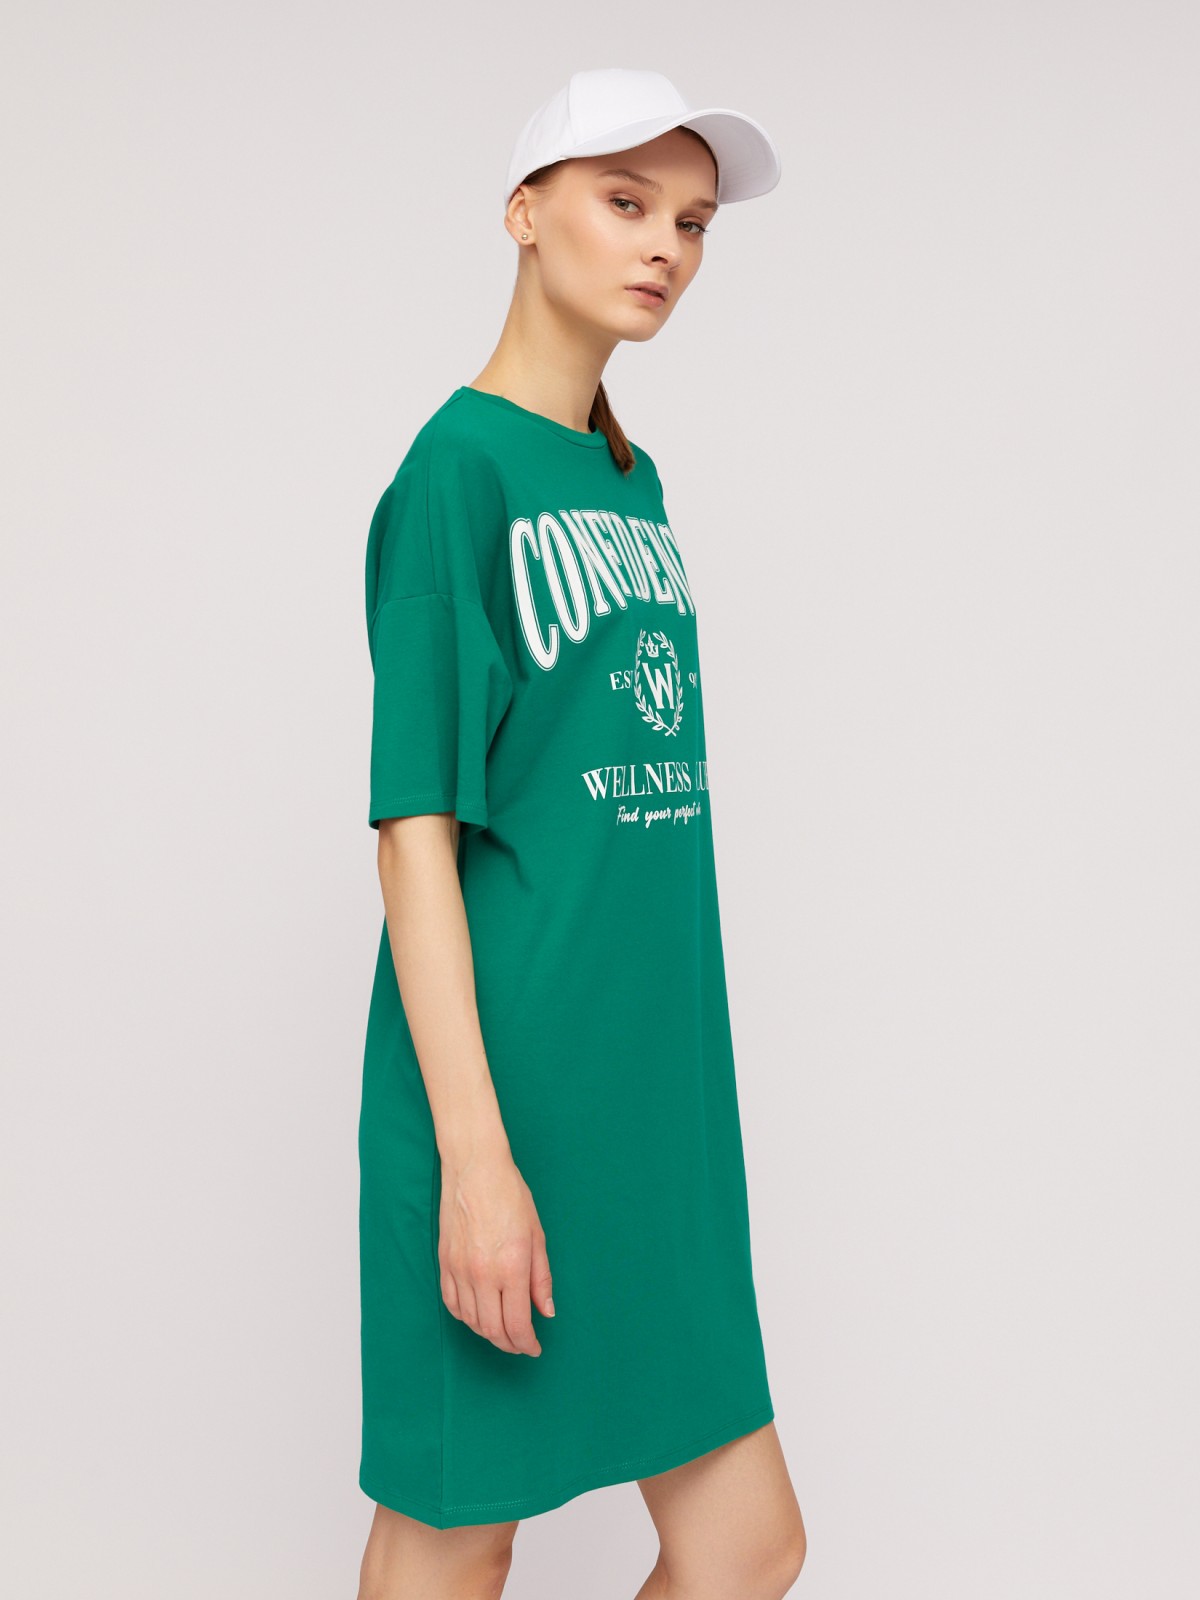 Платье-футболка из хлопка с коротким рукавом и принтом-надписью zolla N24218192033, цвет зеленый, размер S - фото 5